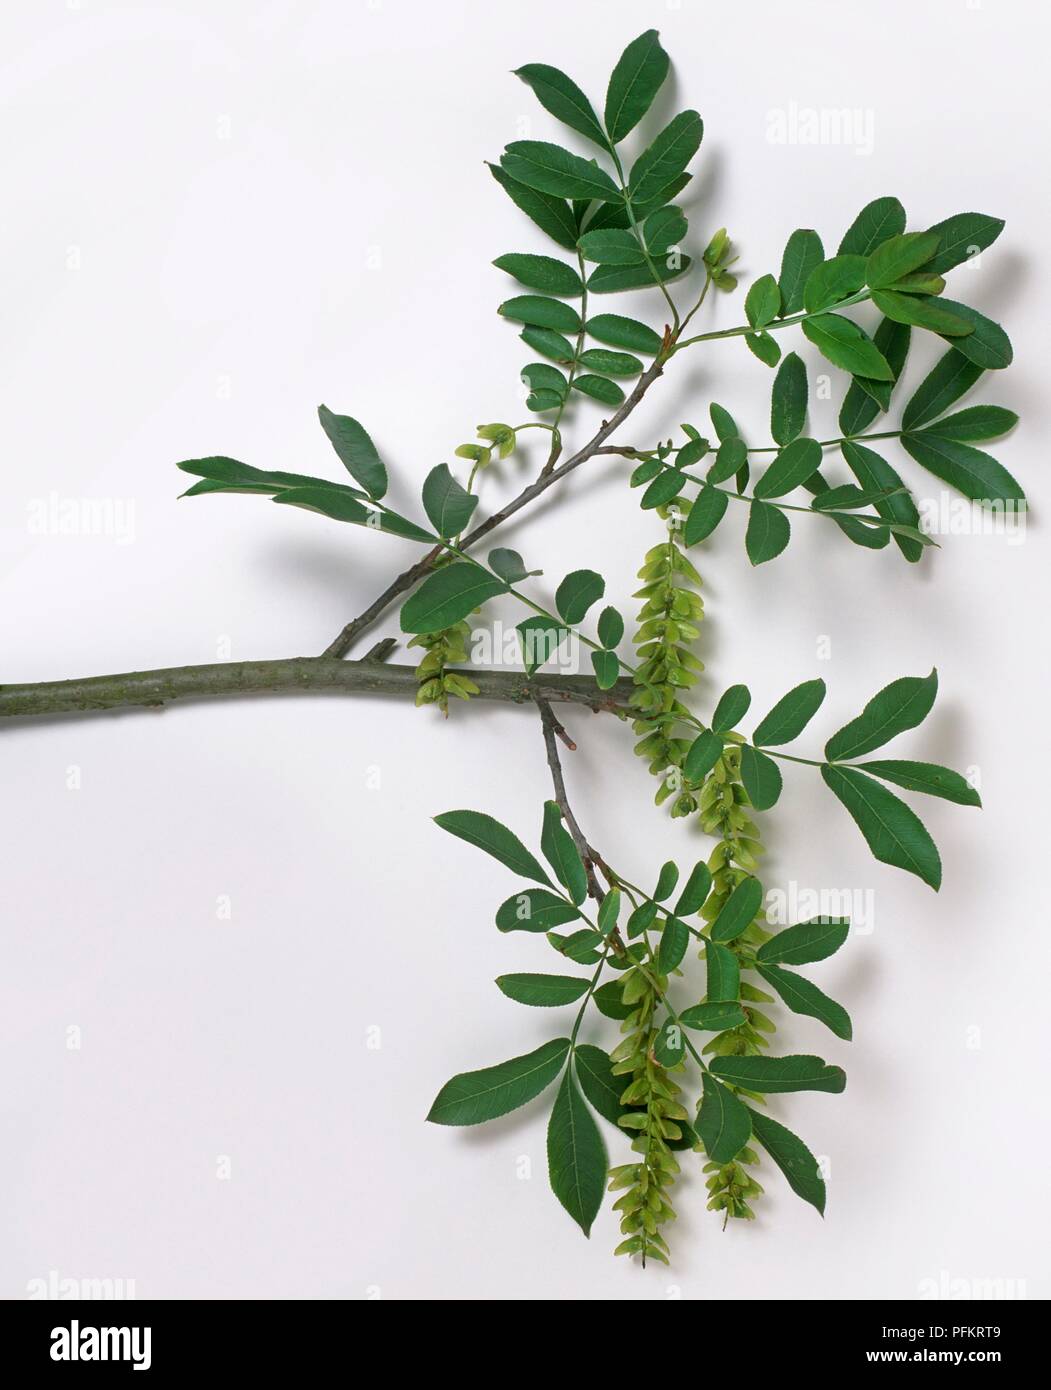 Pterocarya stenoptera (Cinese dado ad alette), il ramo con foglie e ramoscelli Foto Stock